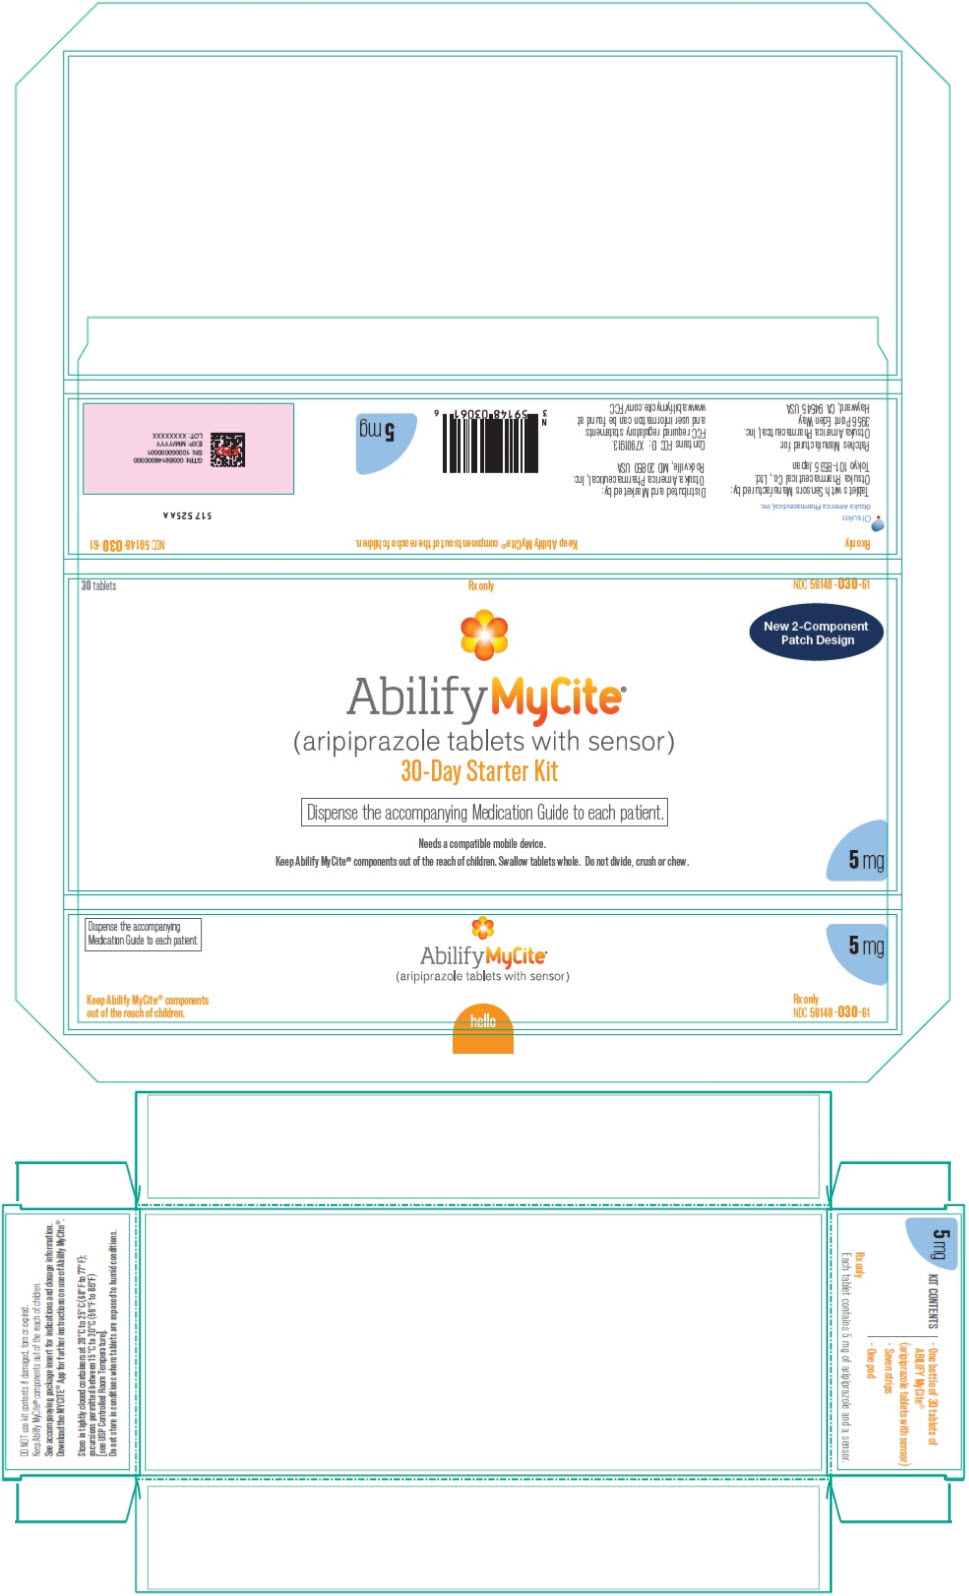 PRINCIPAL DISPLAY PANEL - Starter Kit Carton - 5 mg